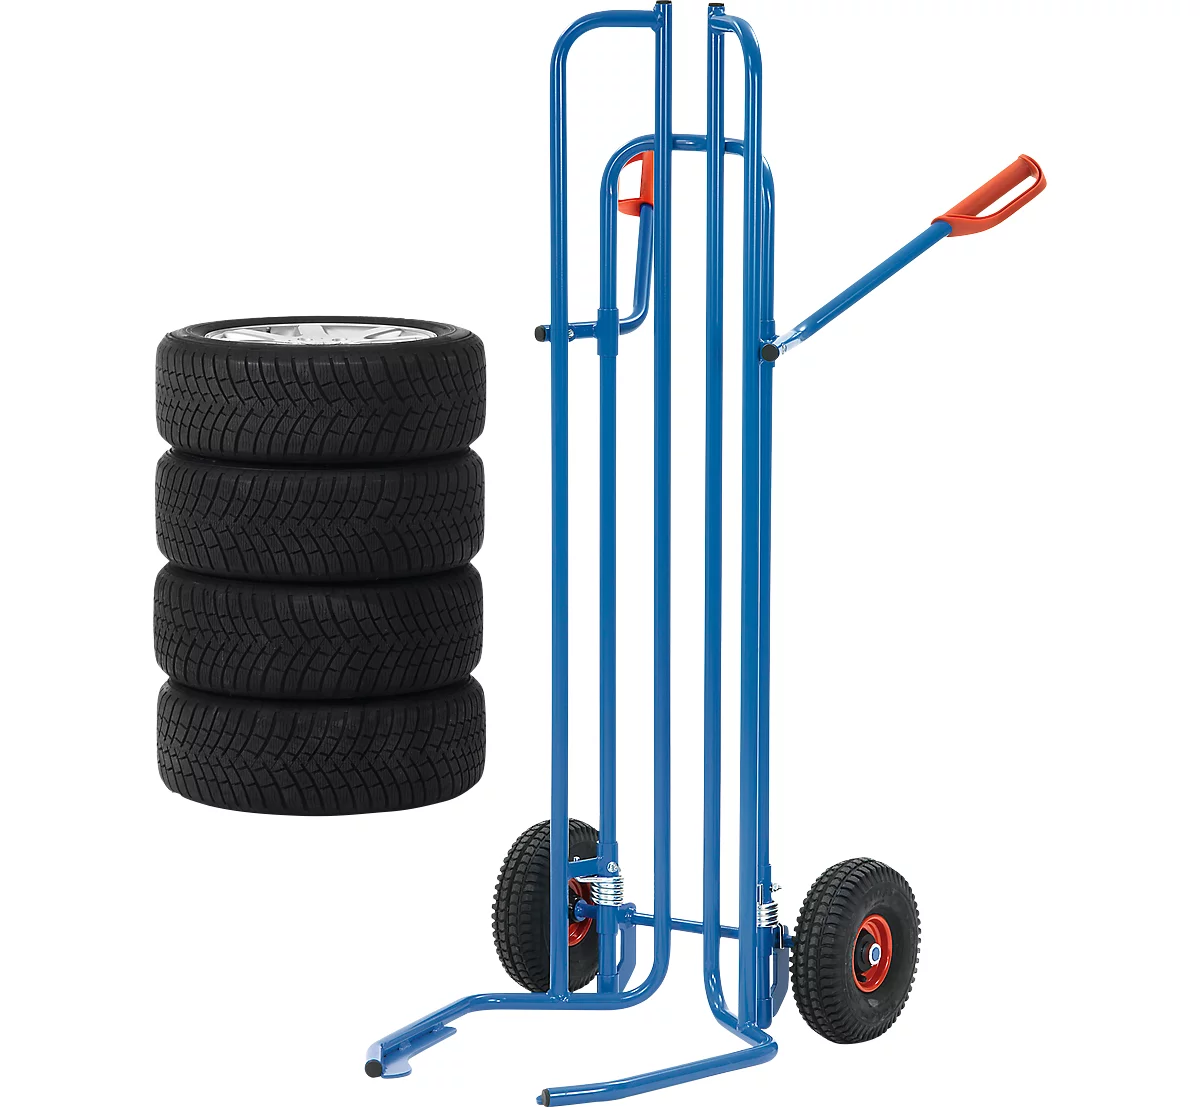 Reifenkarre, Stahlrohr, für 8 Reifen, Ø 450-750 mm, bis 200 kg, Luft-Bereifung, brillantblau (RAL 5007)